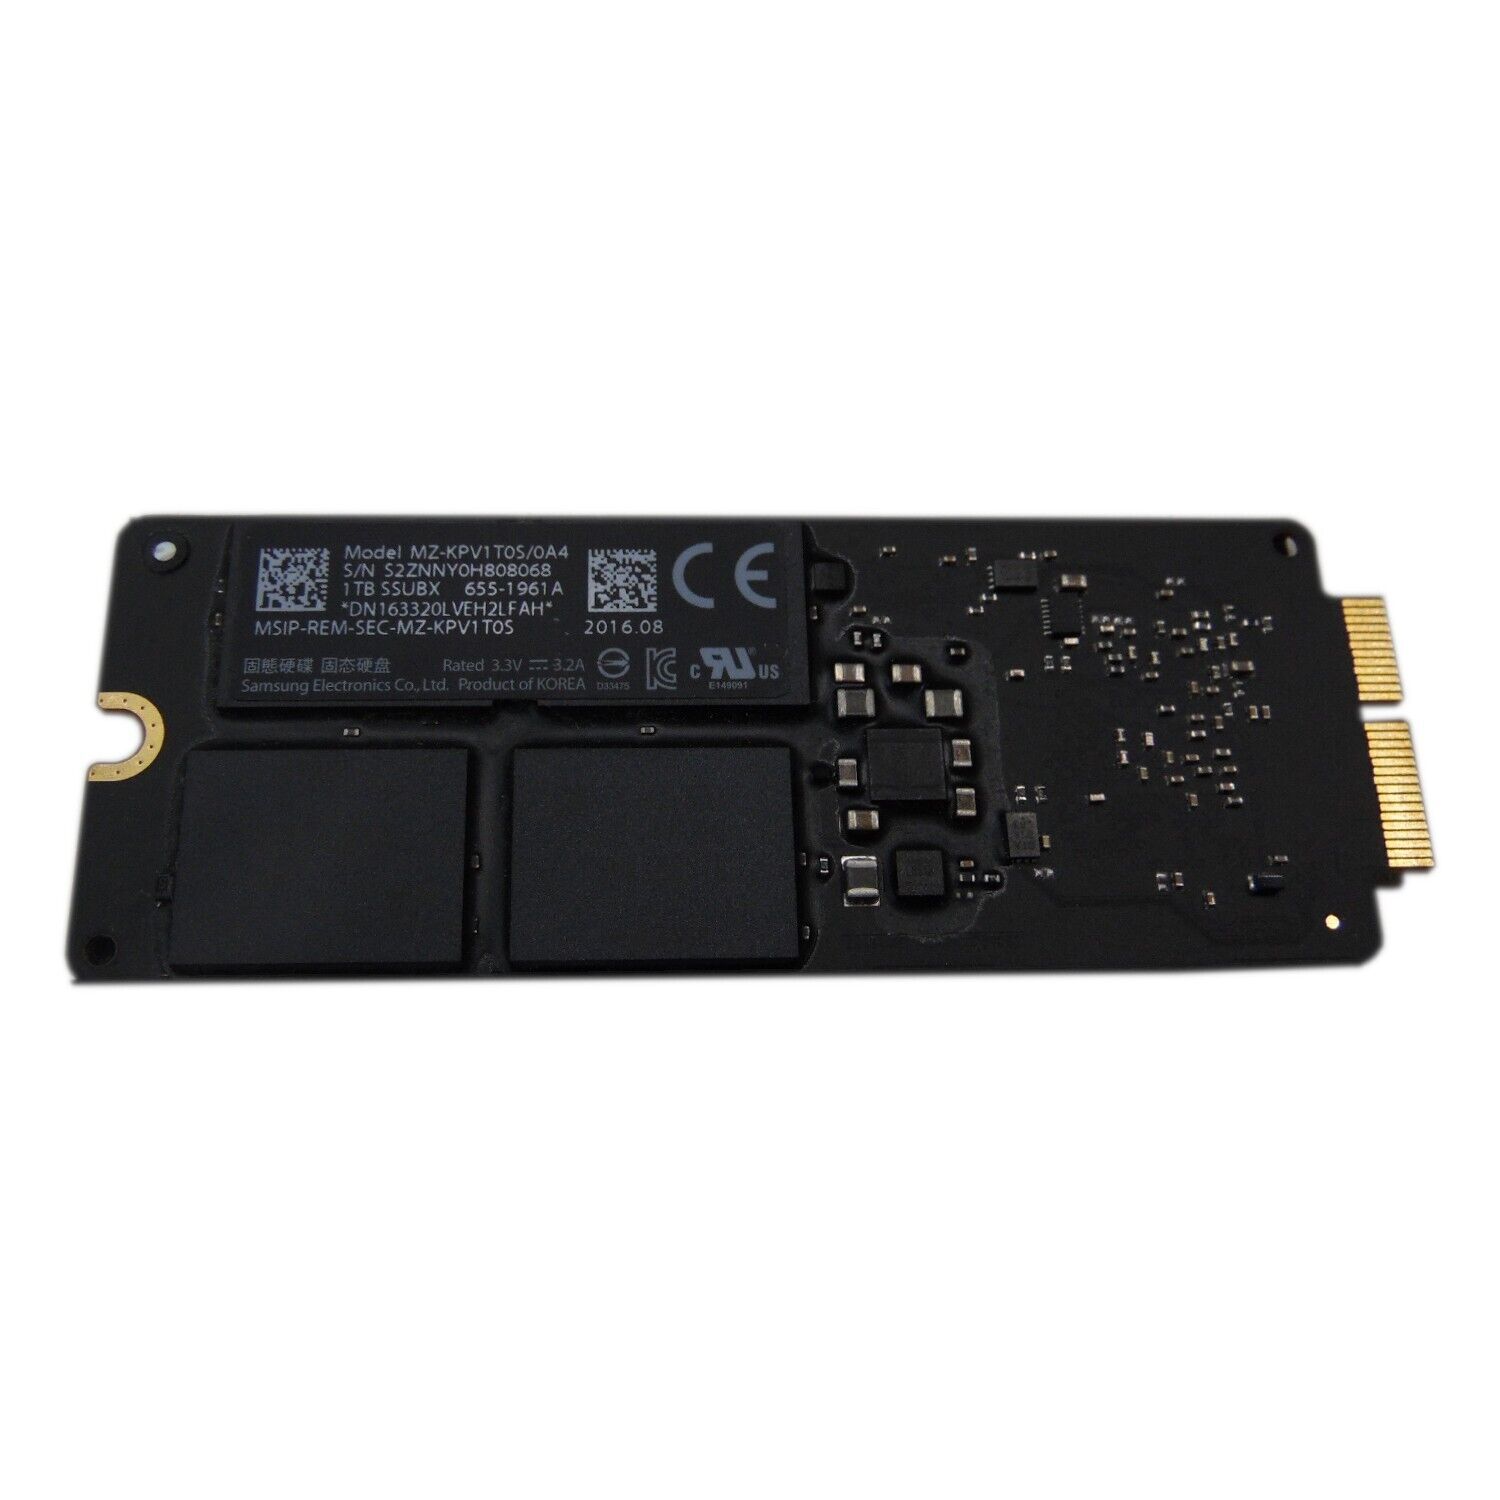 Samsung 1Tb PCIe 3.0 SSD MacBook Pro Retina A1502 A1398 655-1961 Original Apple